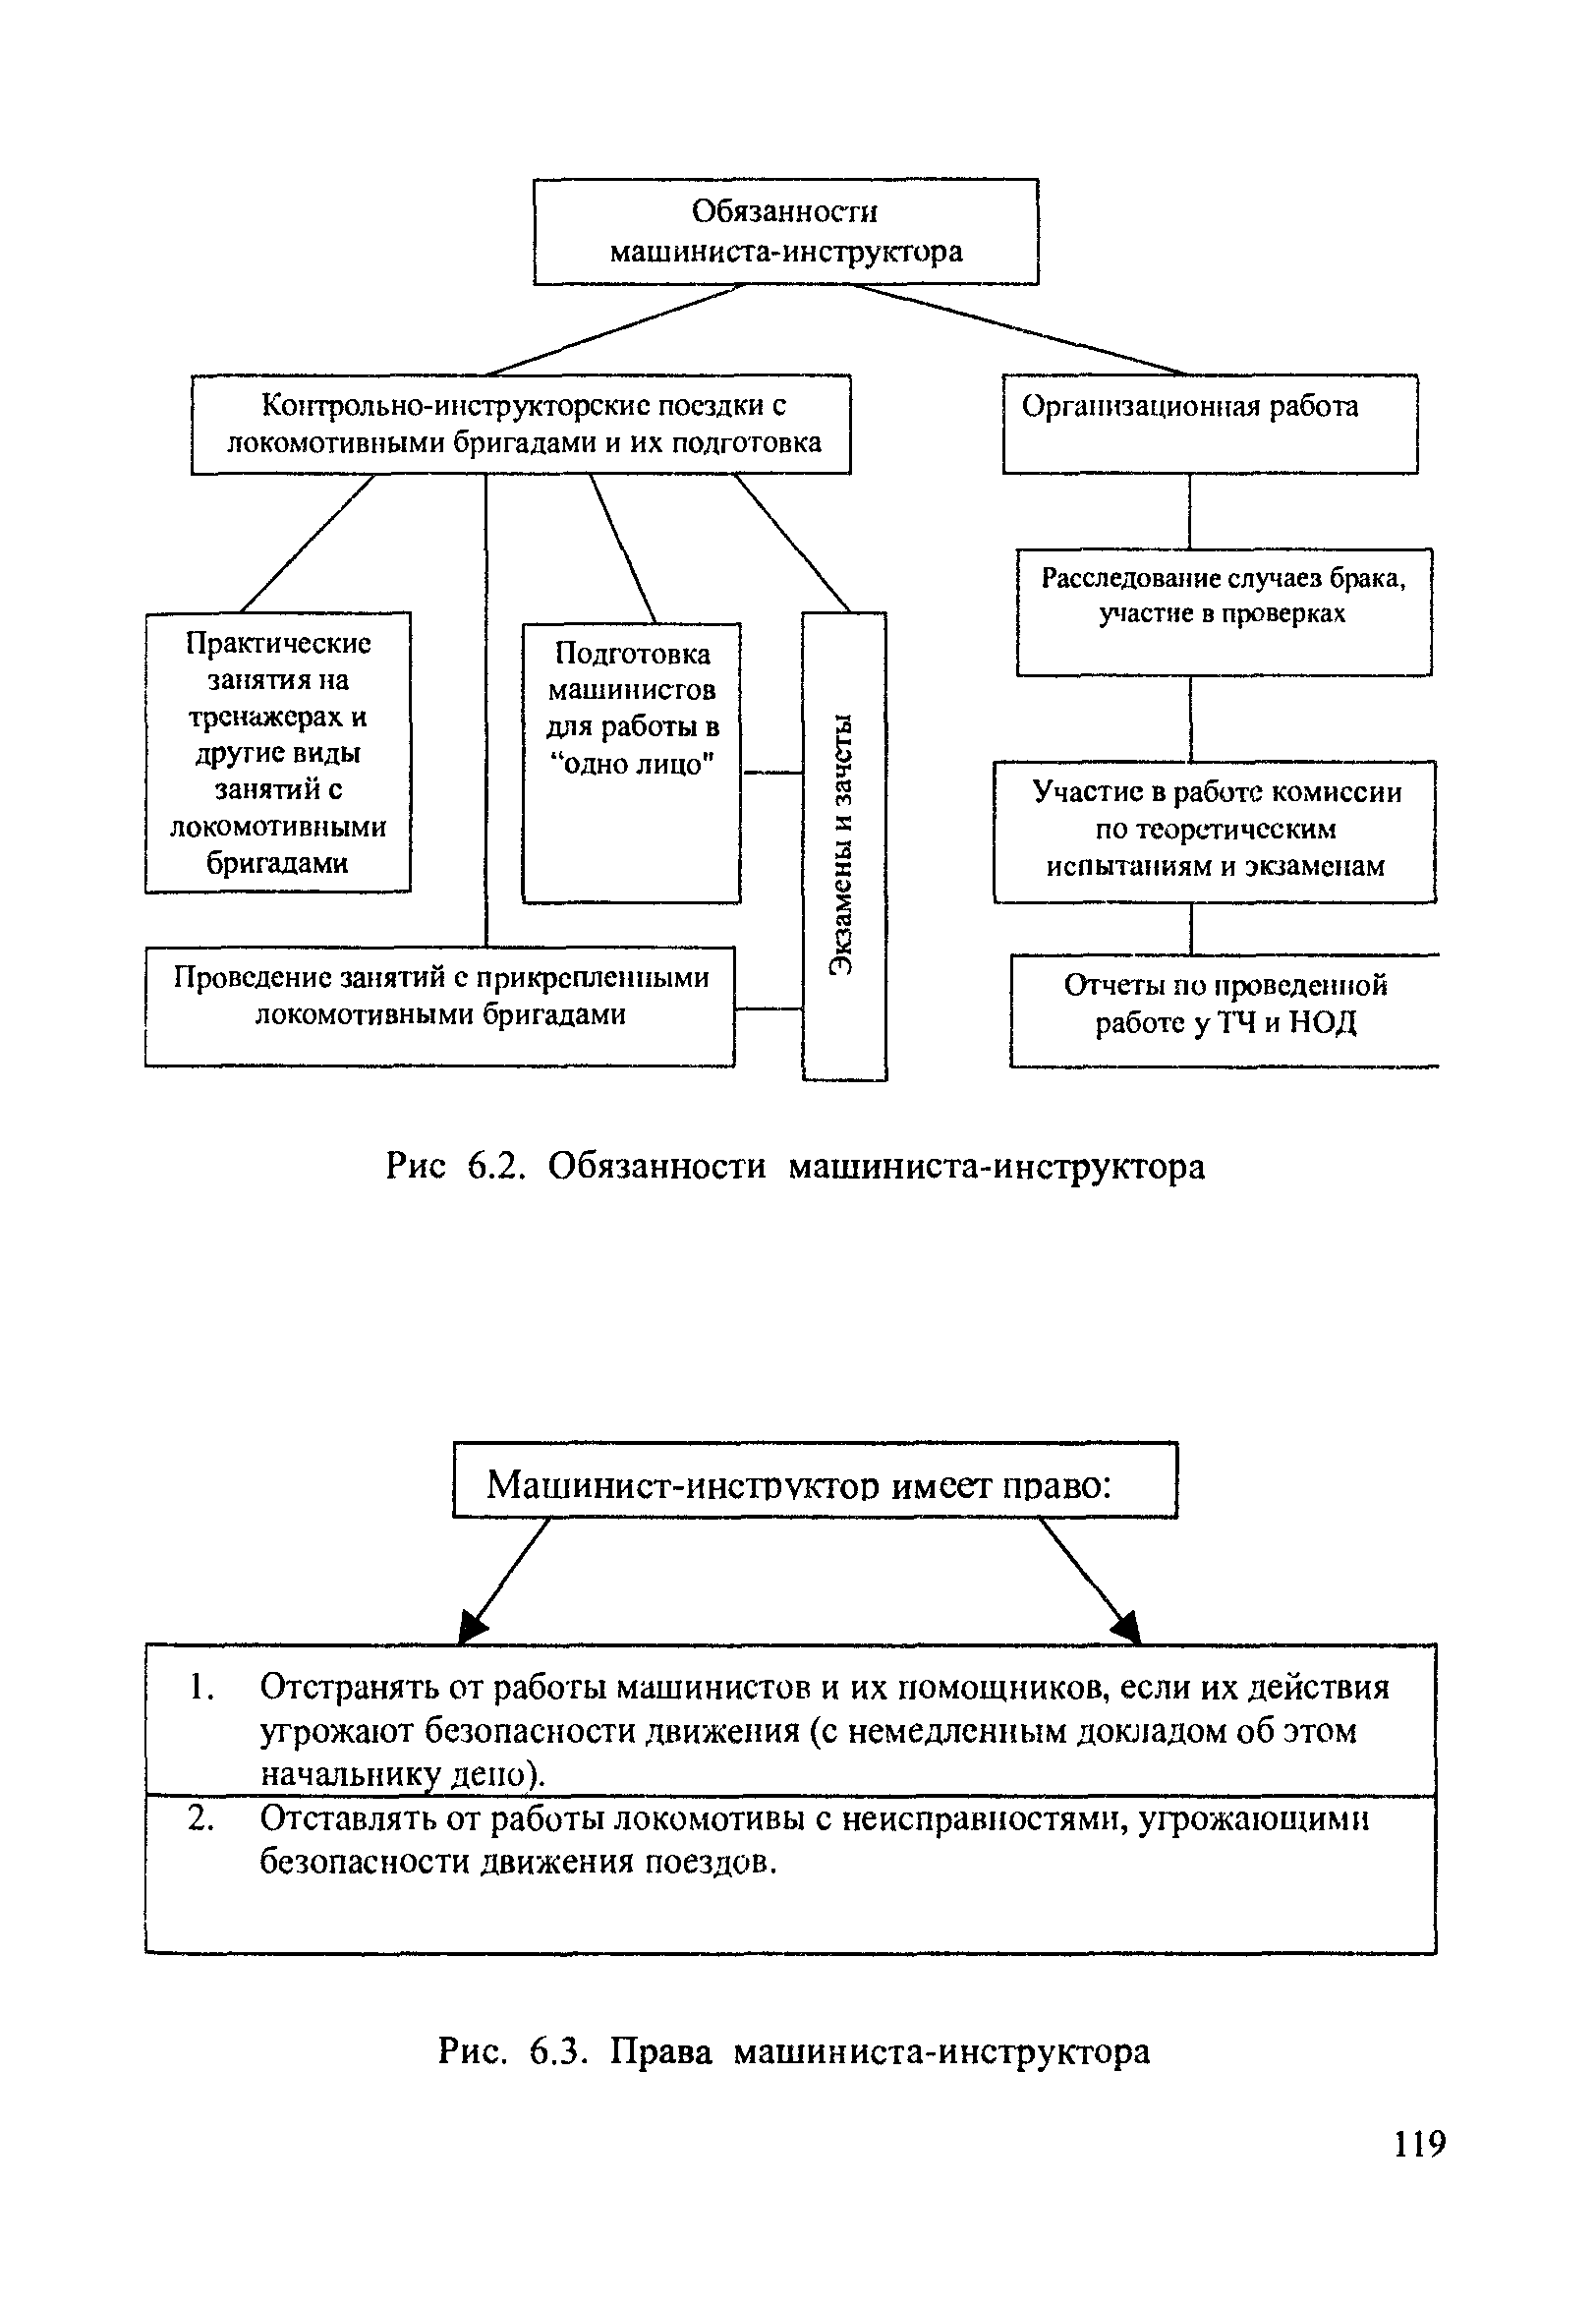 Схема обязанностей машиниста - инструктора